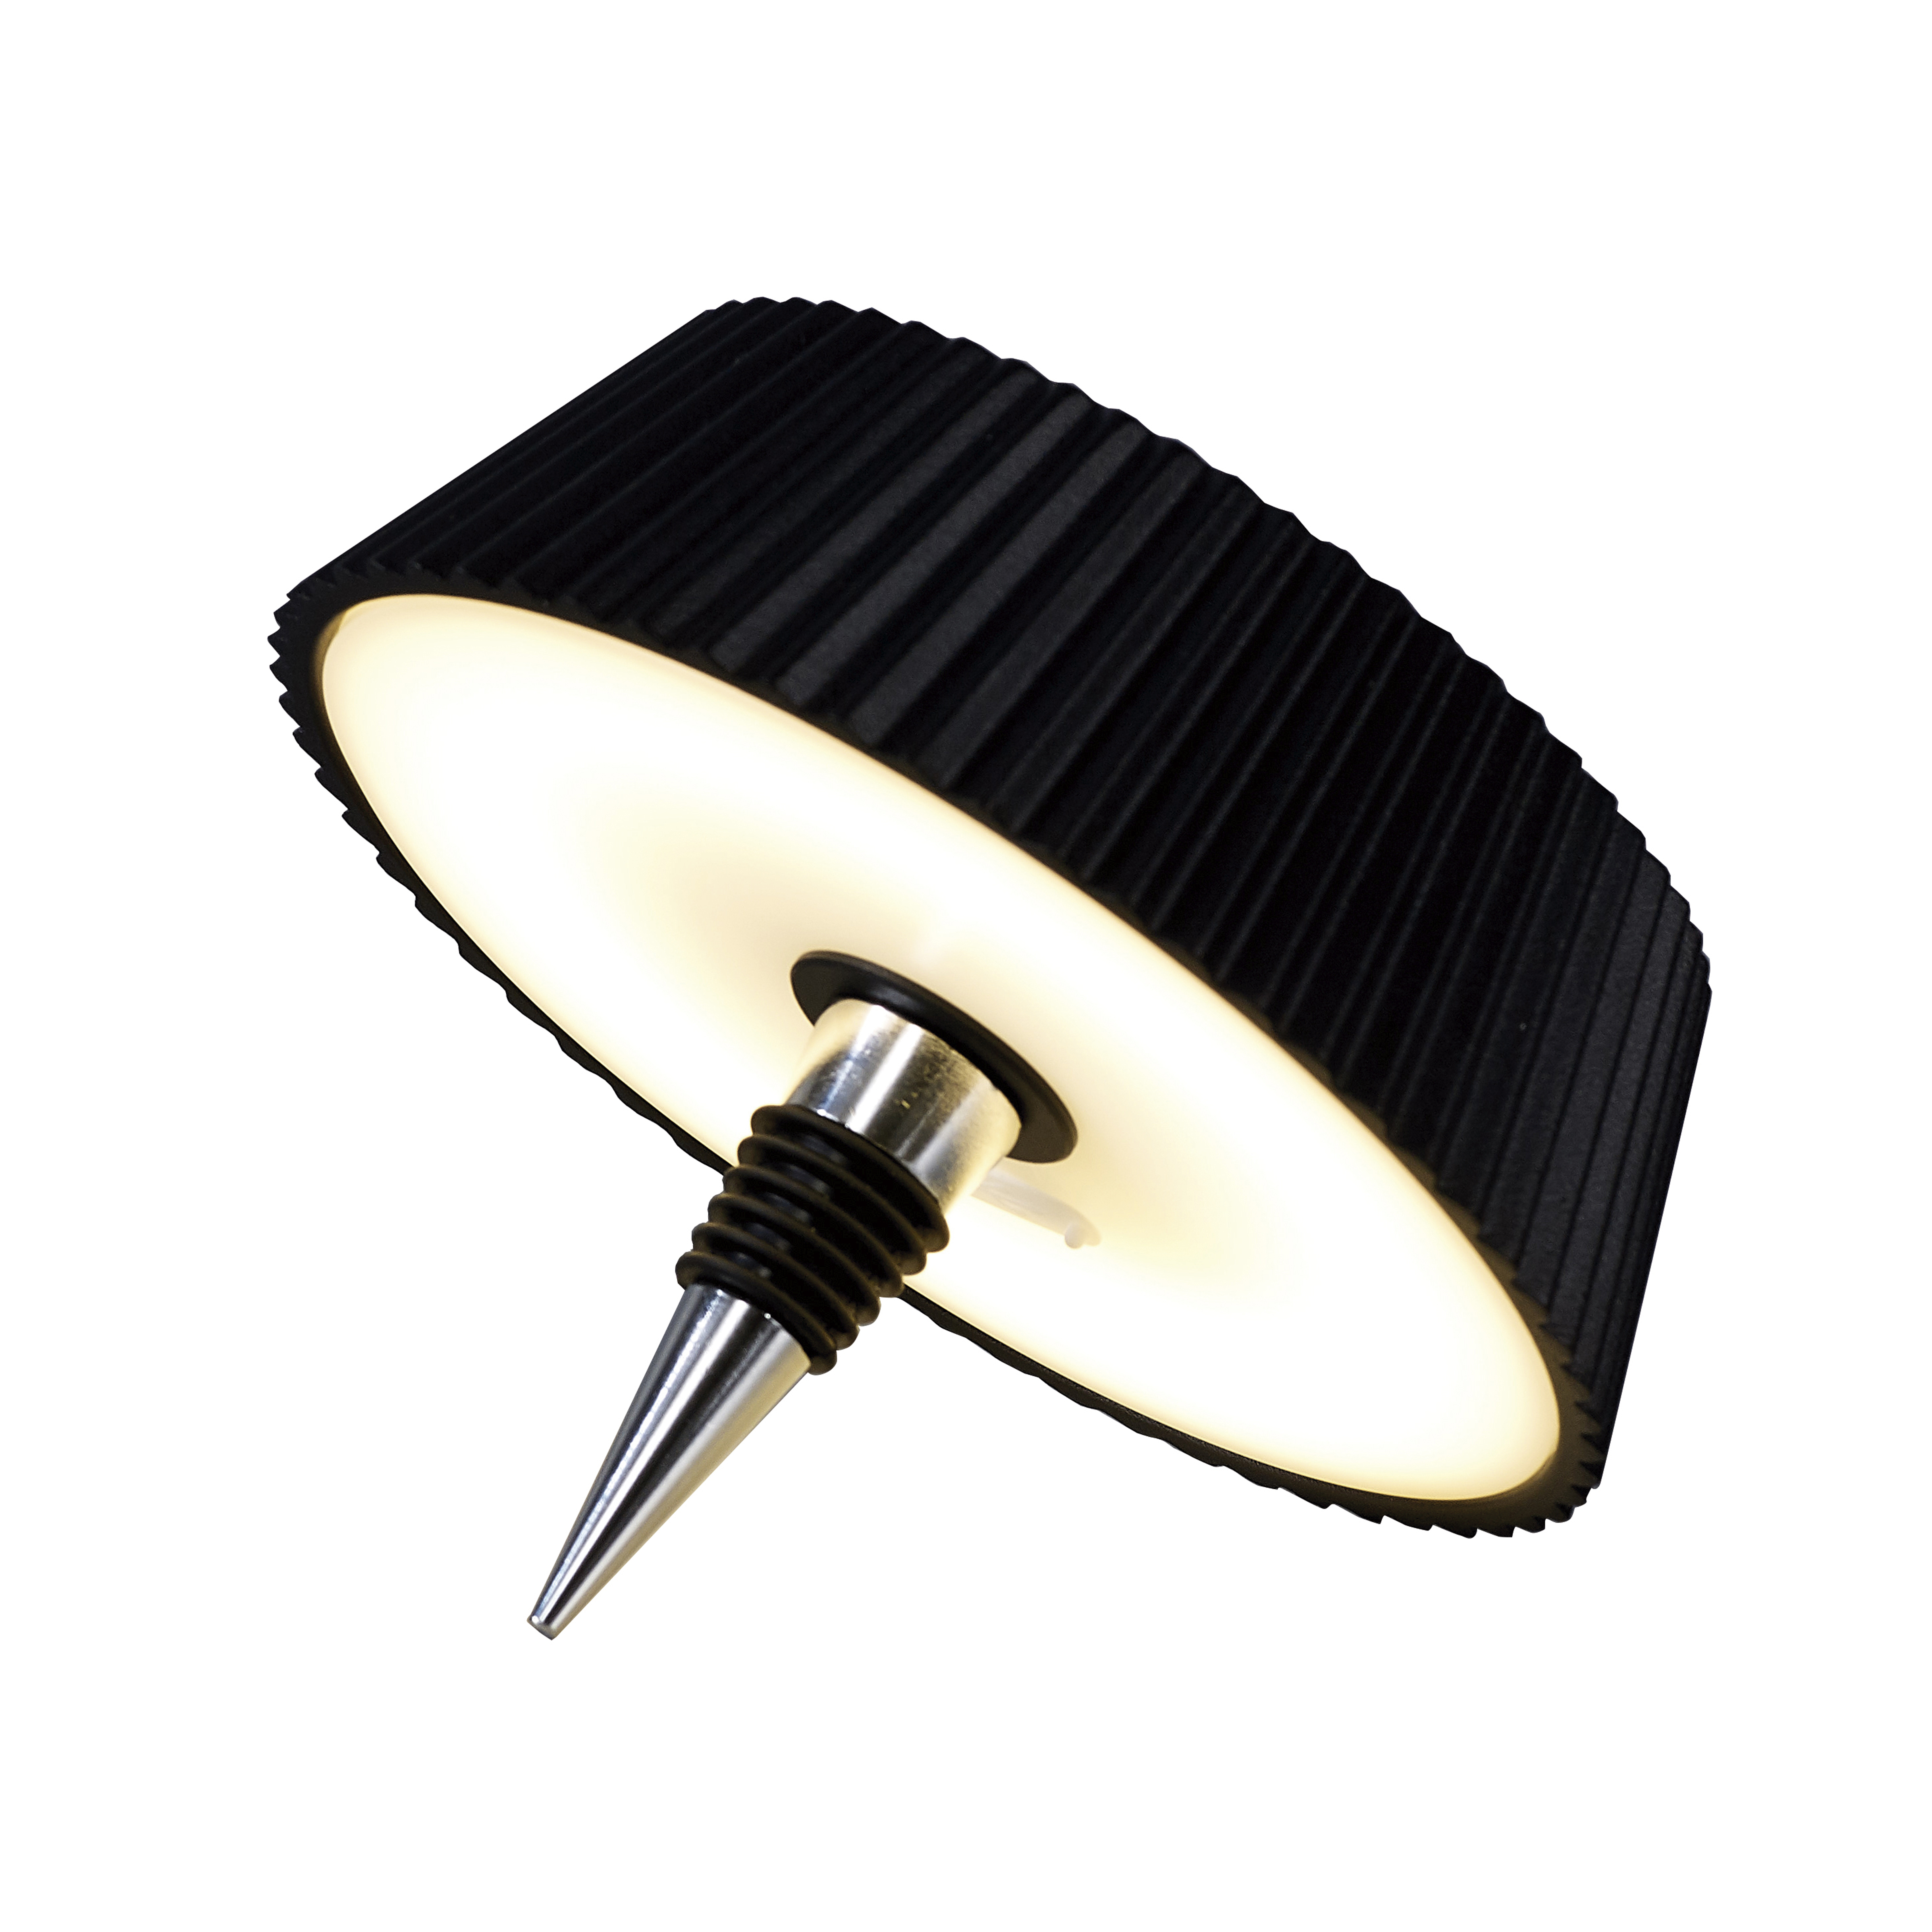 LED nabíjecí lampièka MANTRA RELAX 2W Black do hrdla lahve, moderní design, 3000K, 180lm, IP54, stmívatelné, 7931 - zvìtšit obrázek